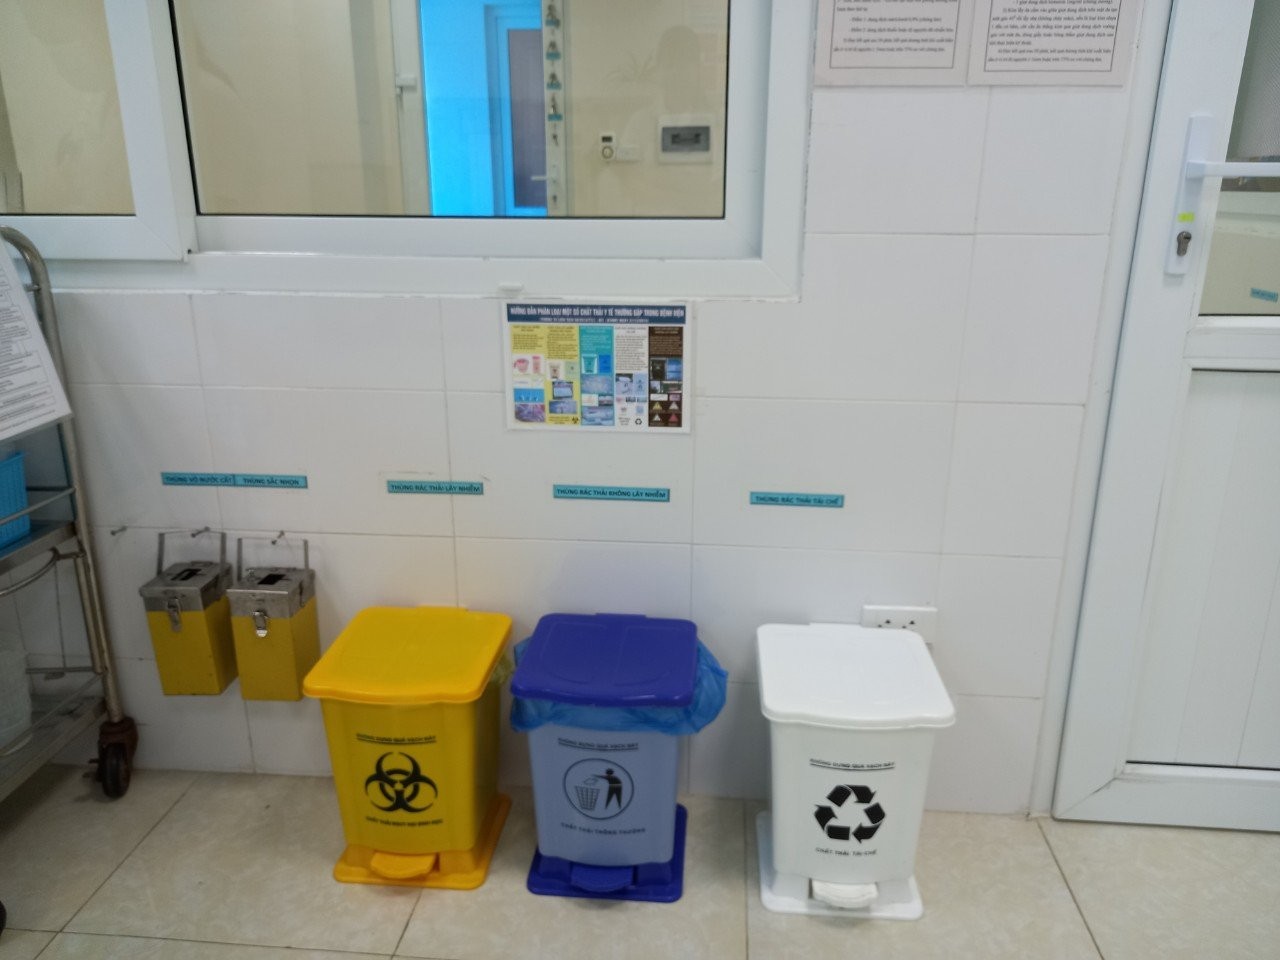 Bệnh viện Nhi Thanh Hóa: Tích cực xây dựng môi trường Xanh - sạch - đẹp: góp phần nâng cao chất lượng, chăm sóc sức khỏe cộng đồng, hướng tới sự hài l